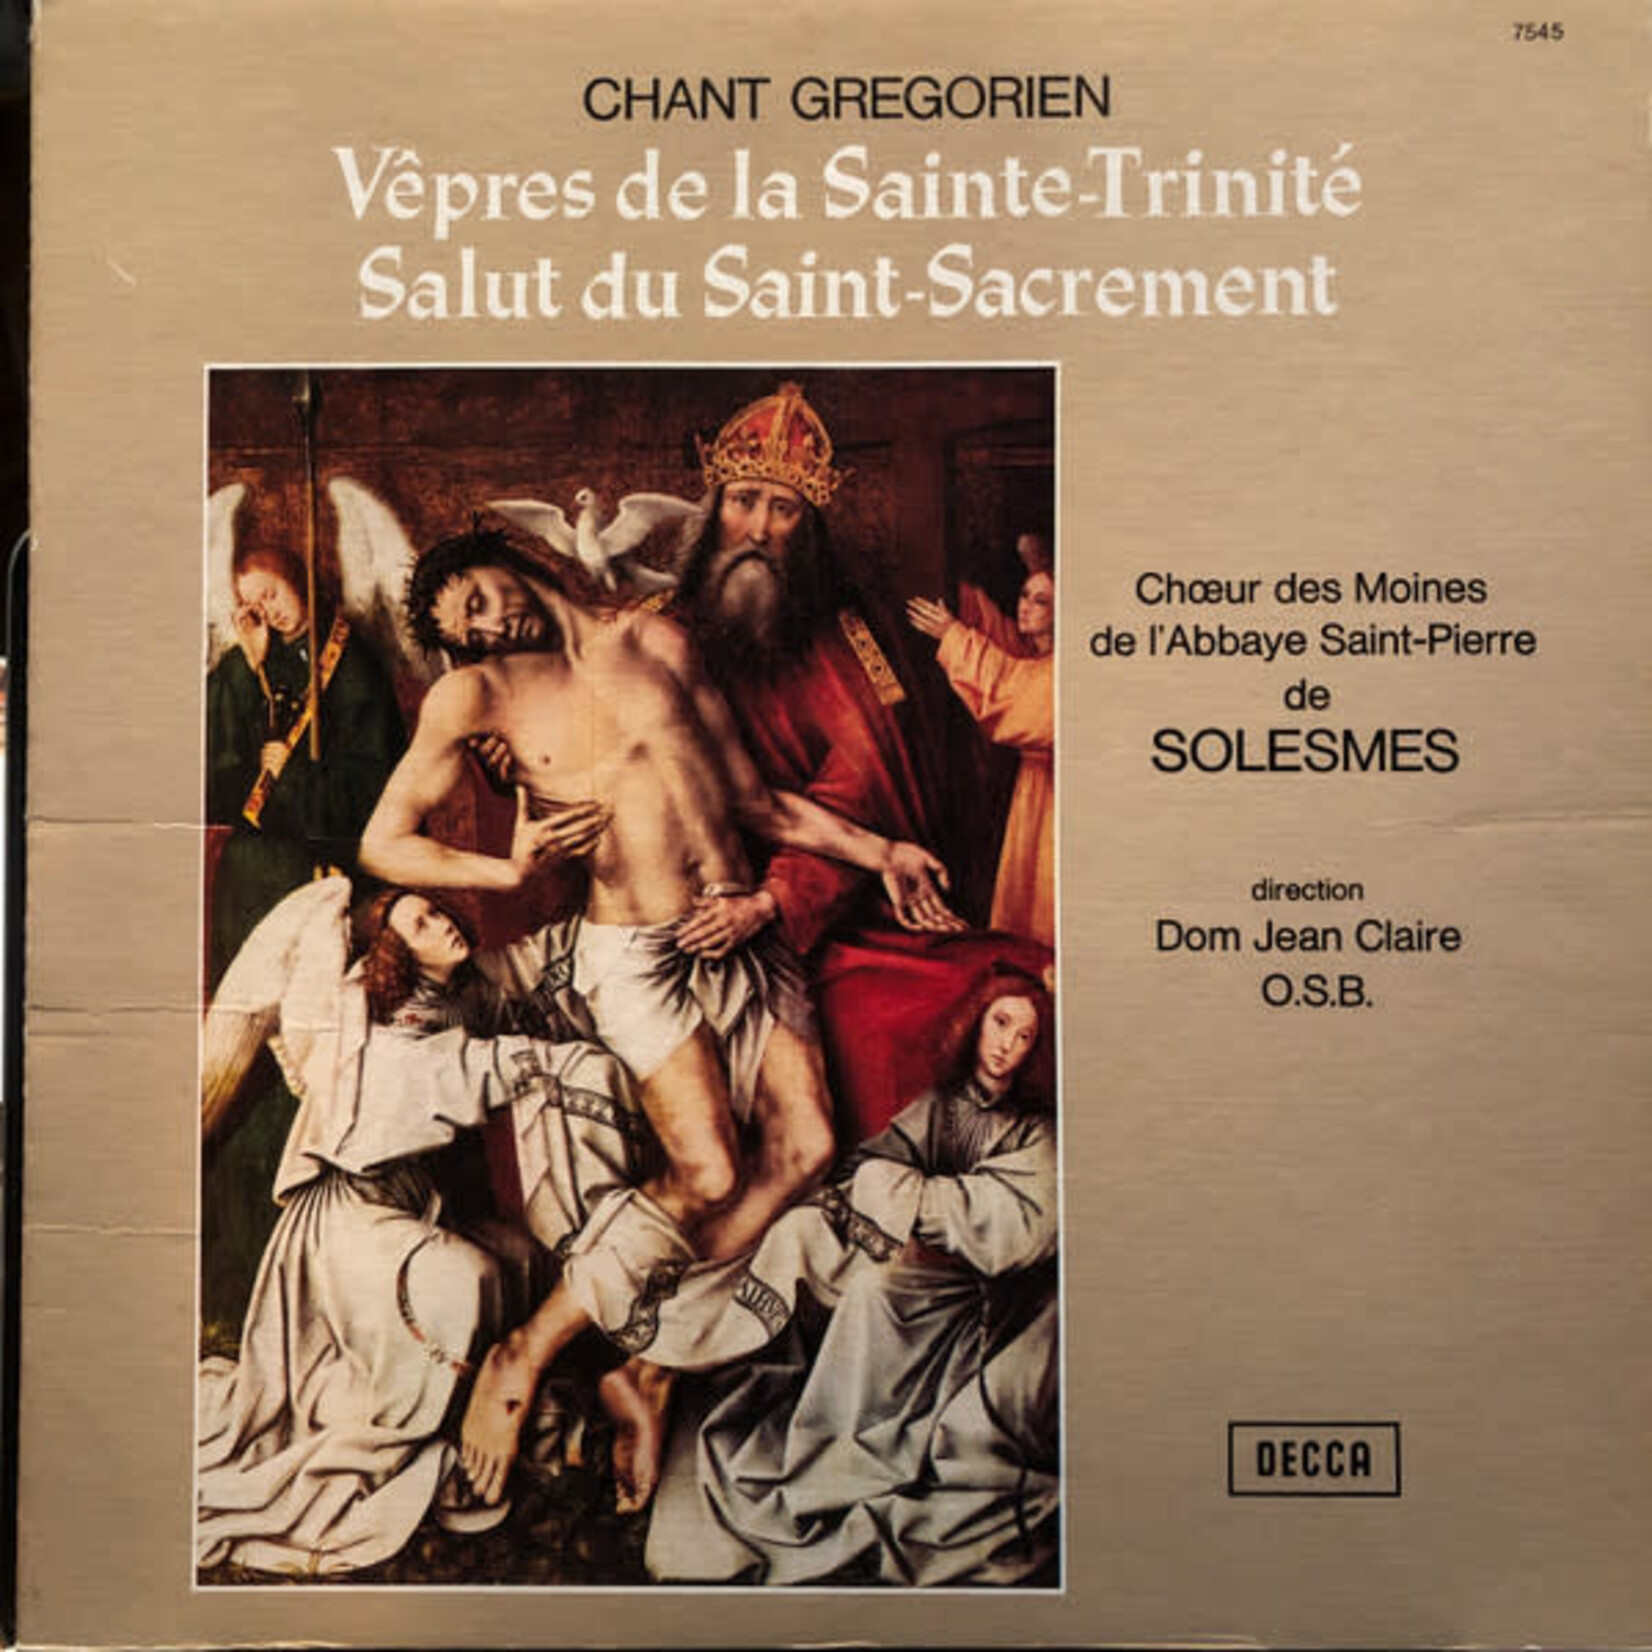 CHANT GRÉGORIEN - VEPRES DE LA SAINTE-TRINITÉ - LP